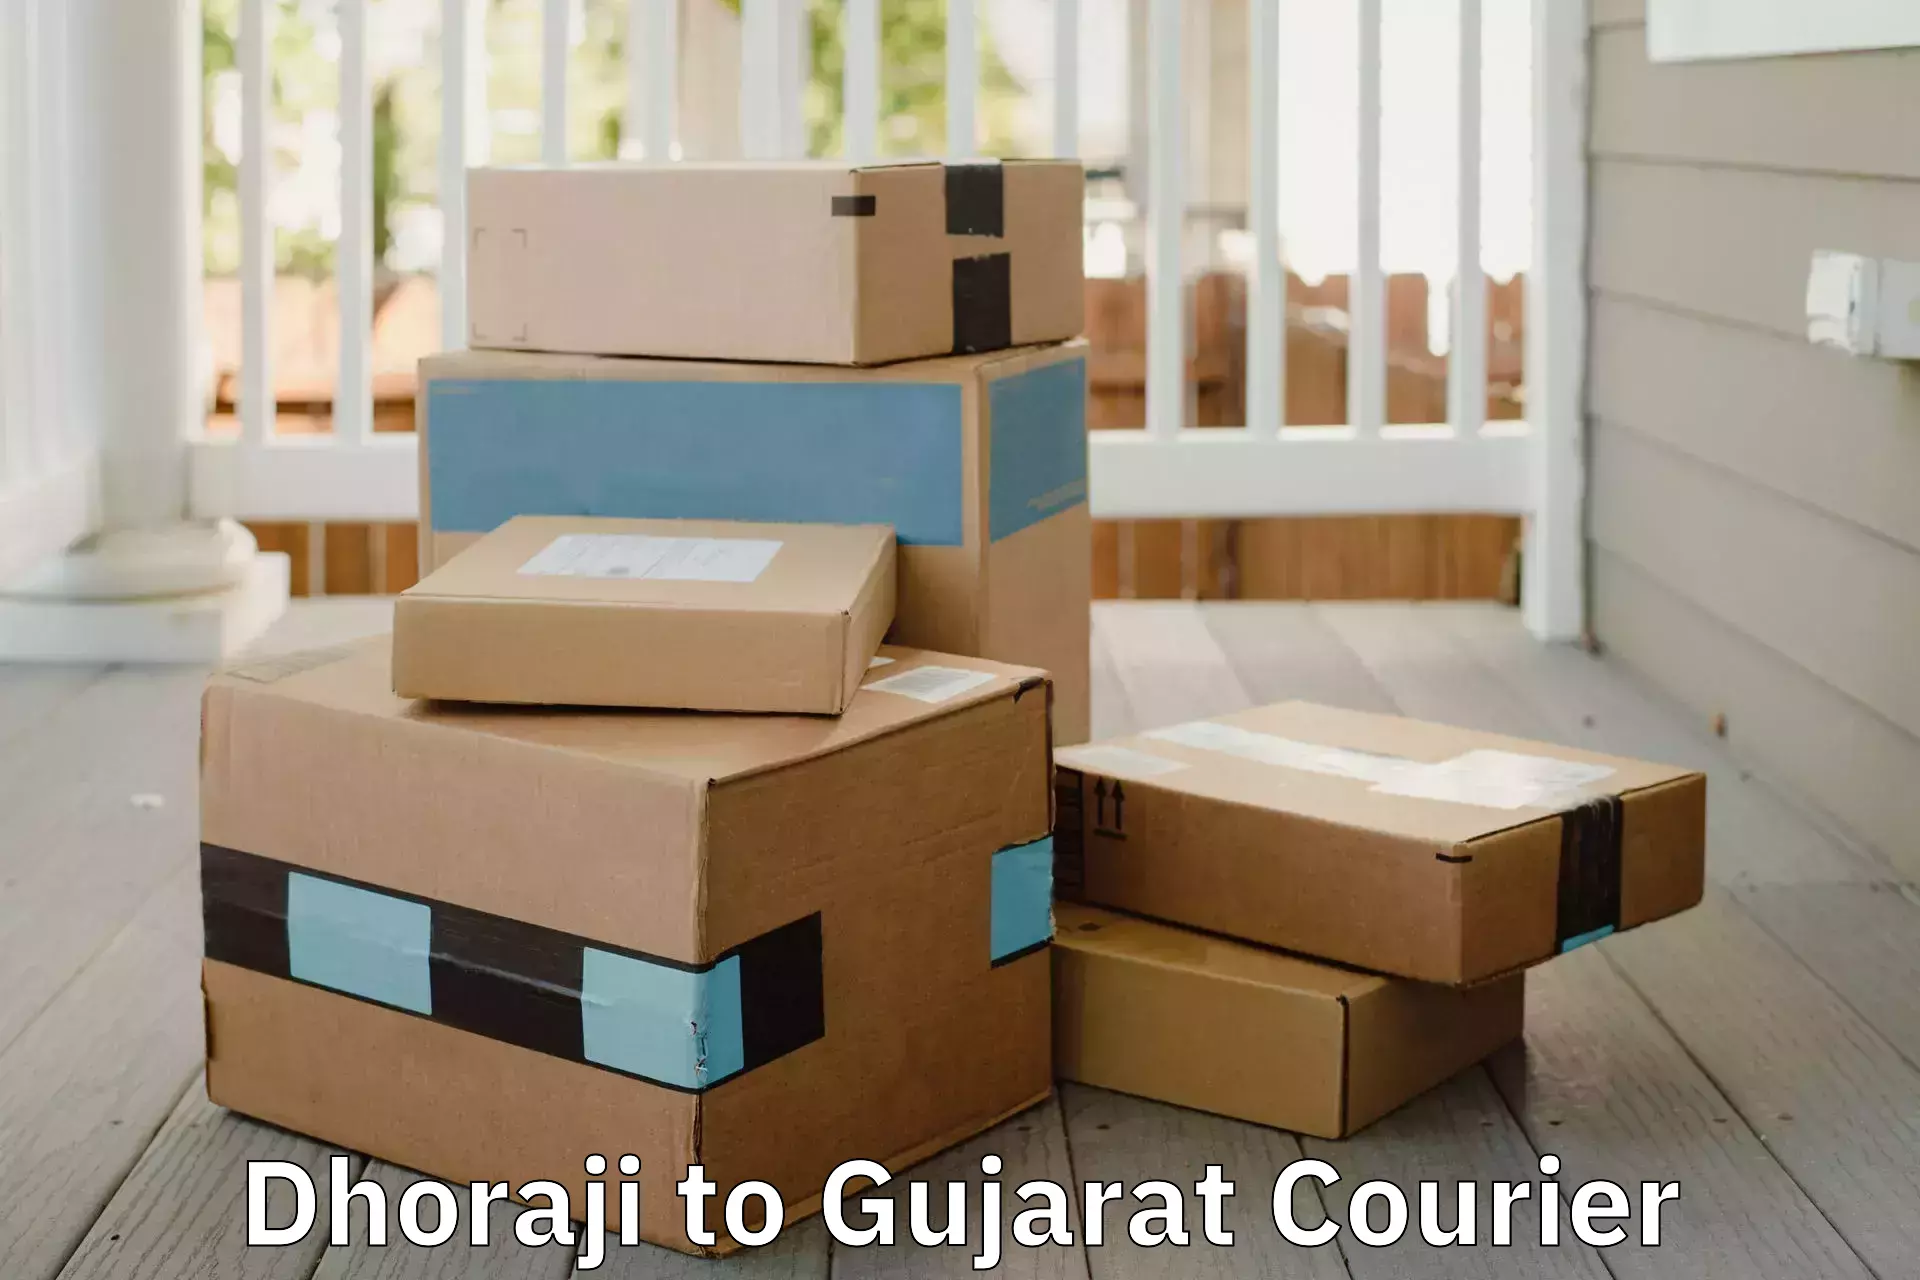 Furniture moving services Dhoraji to Gandhinagar